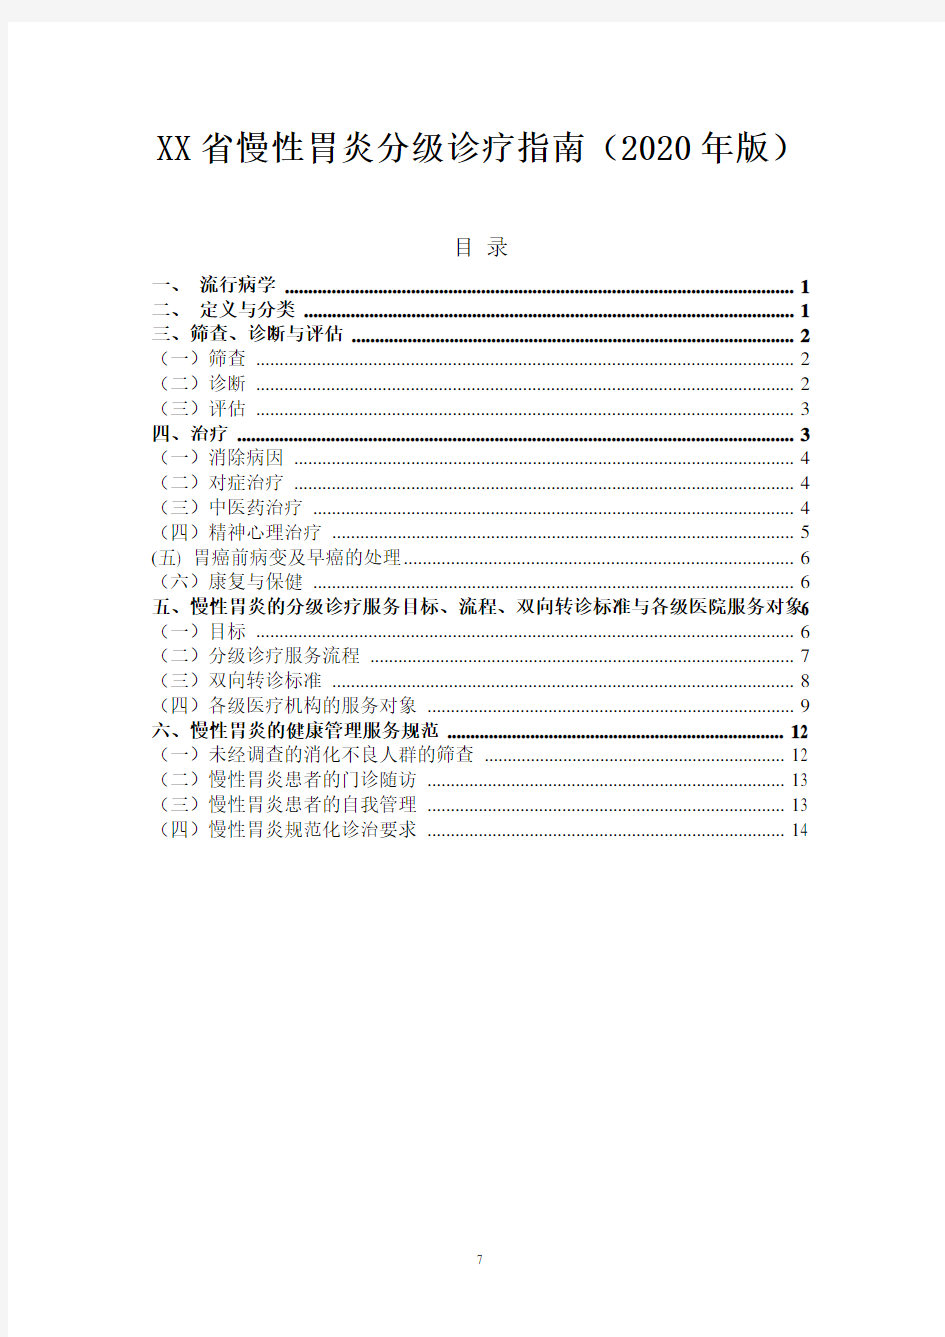 XX省慢性胃炎分级诊疗指南(2020年版)